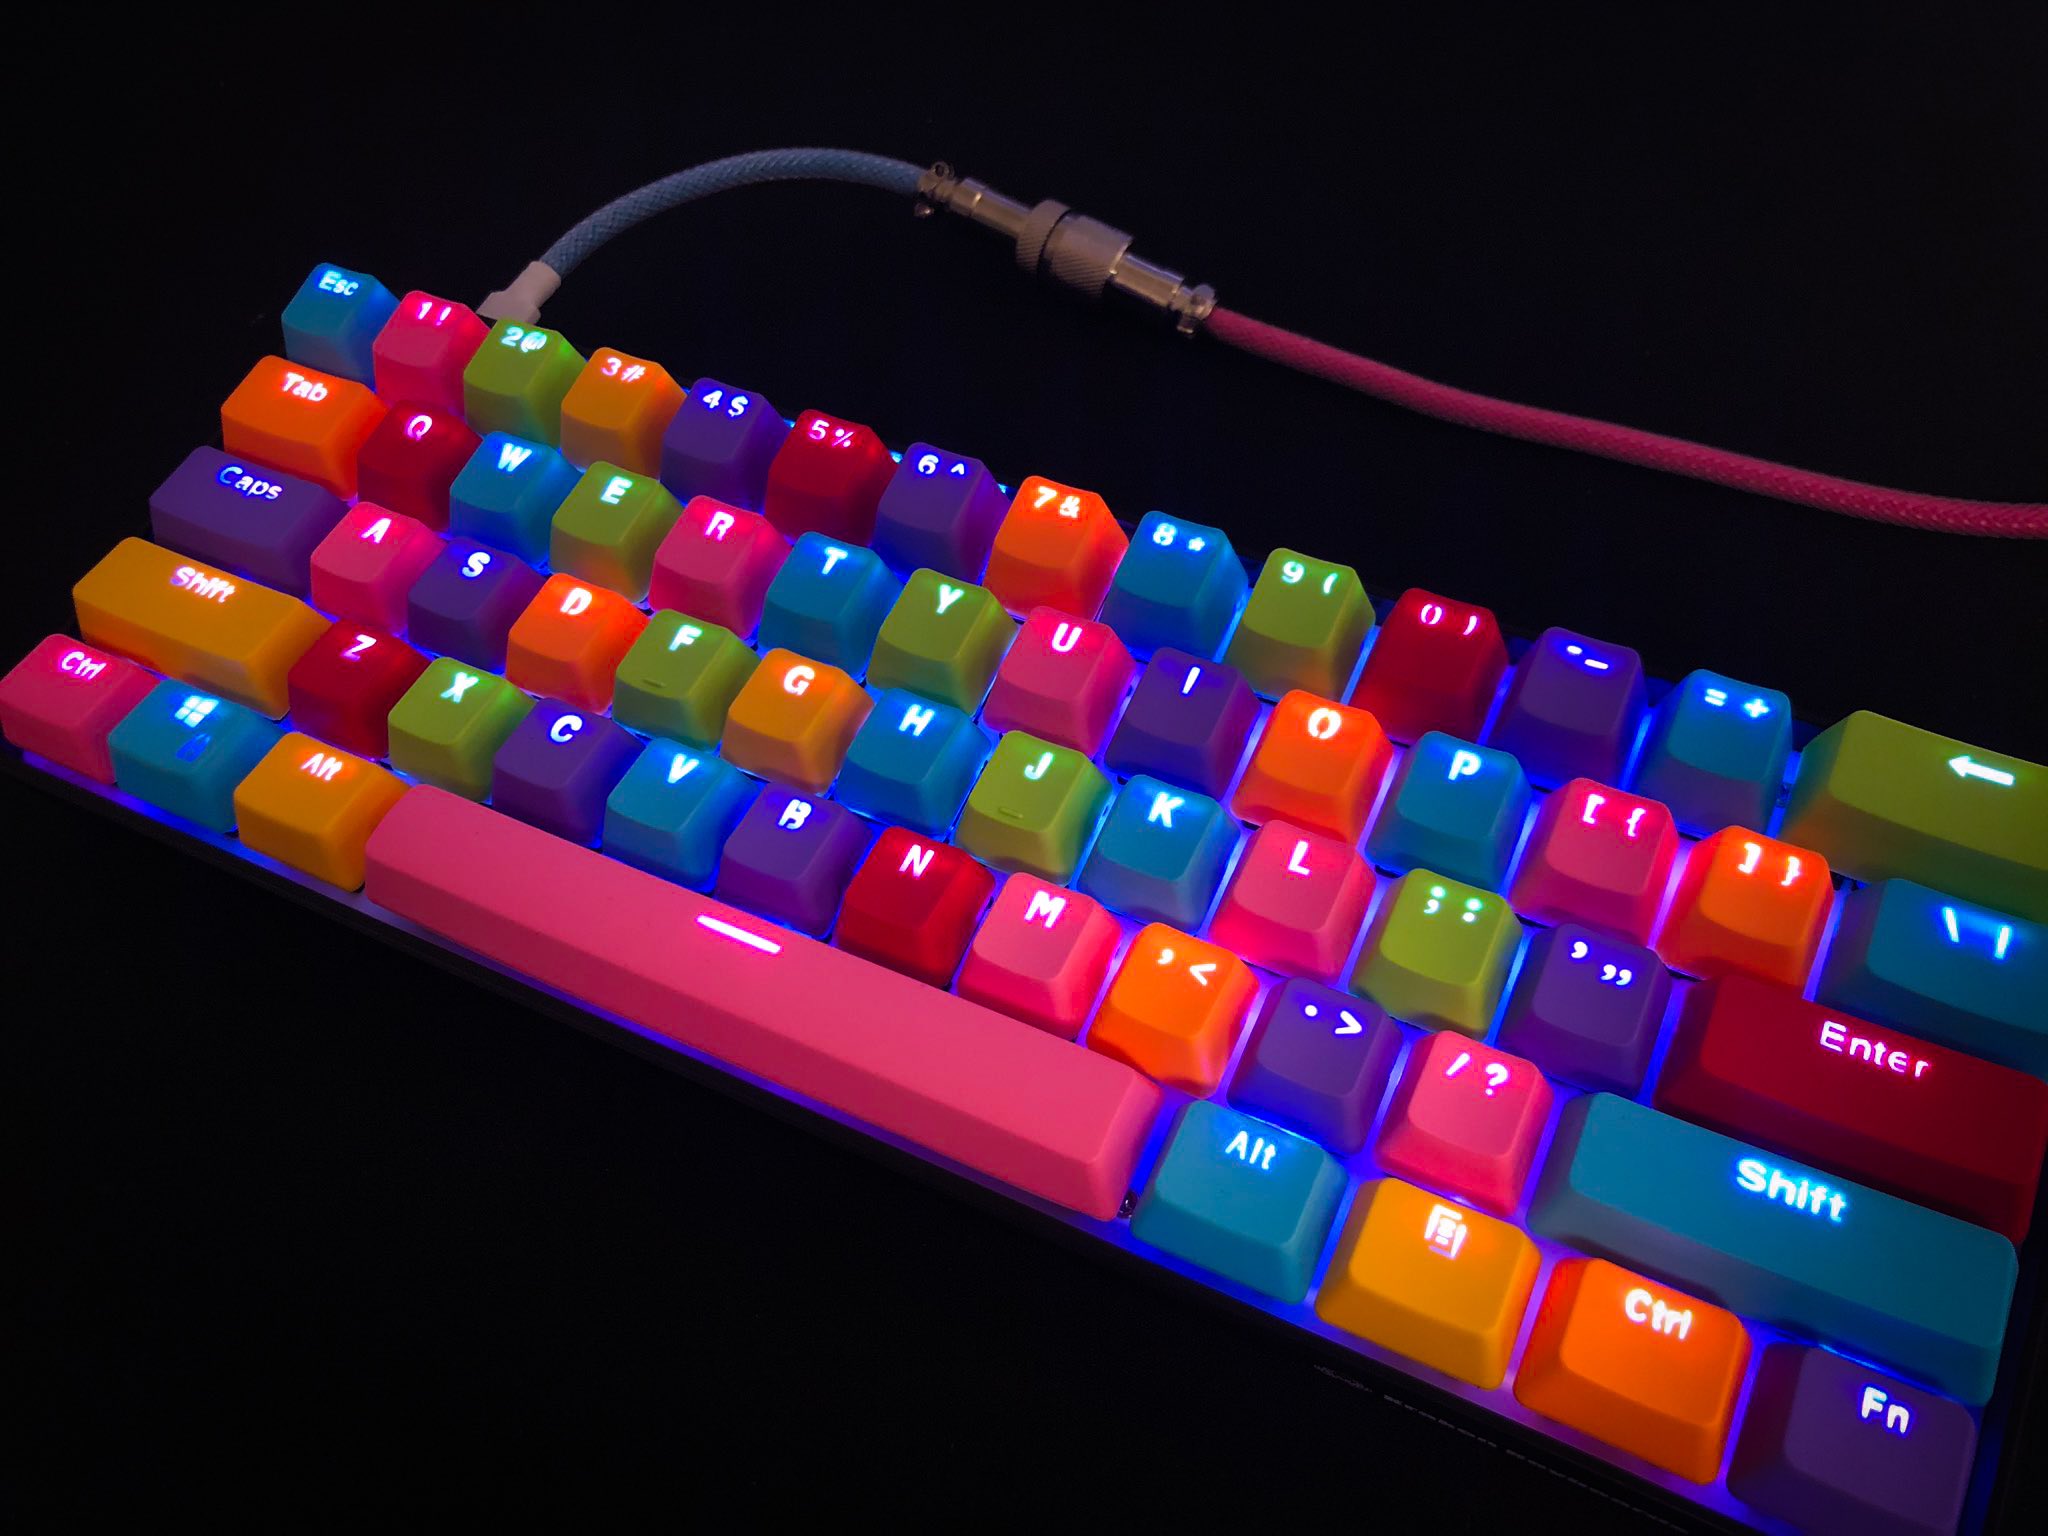 This Rainbow Edition Kraken Pro 60 is - Kraken Keyboards